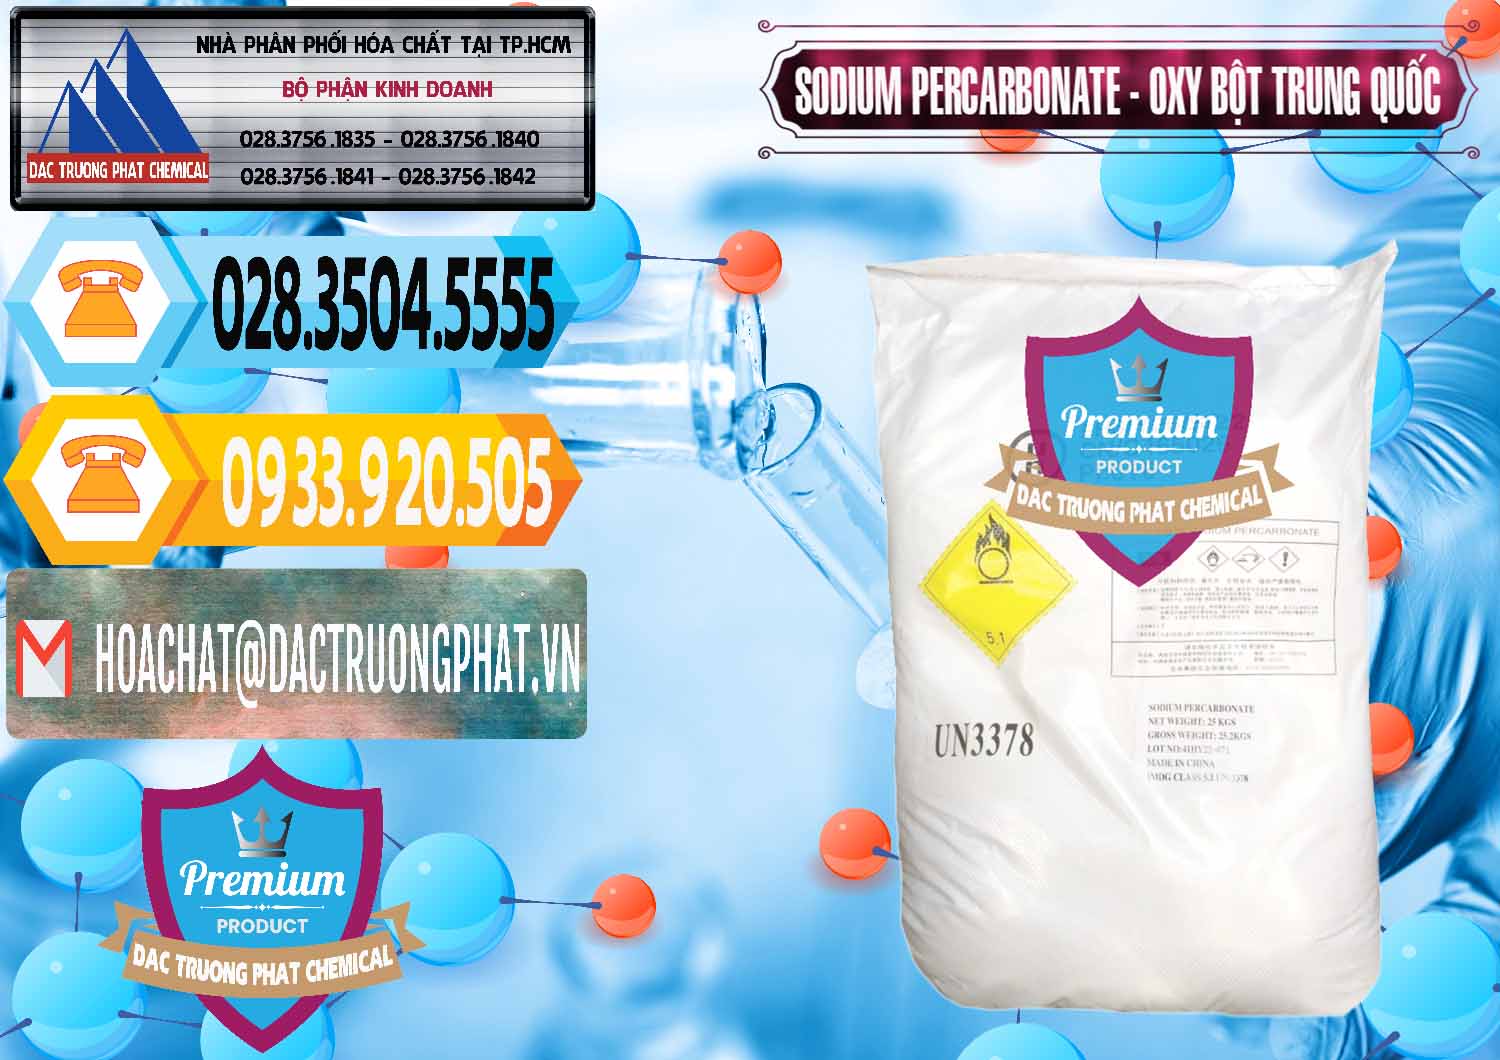 Chuyên bán - cung cấp Sodium Percarbonate Dạng Bột Trung Quốc China - 0390 - Nhà phân phối và cung cấp hóa chất tại TP.HCM - hoachattayrua.net